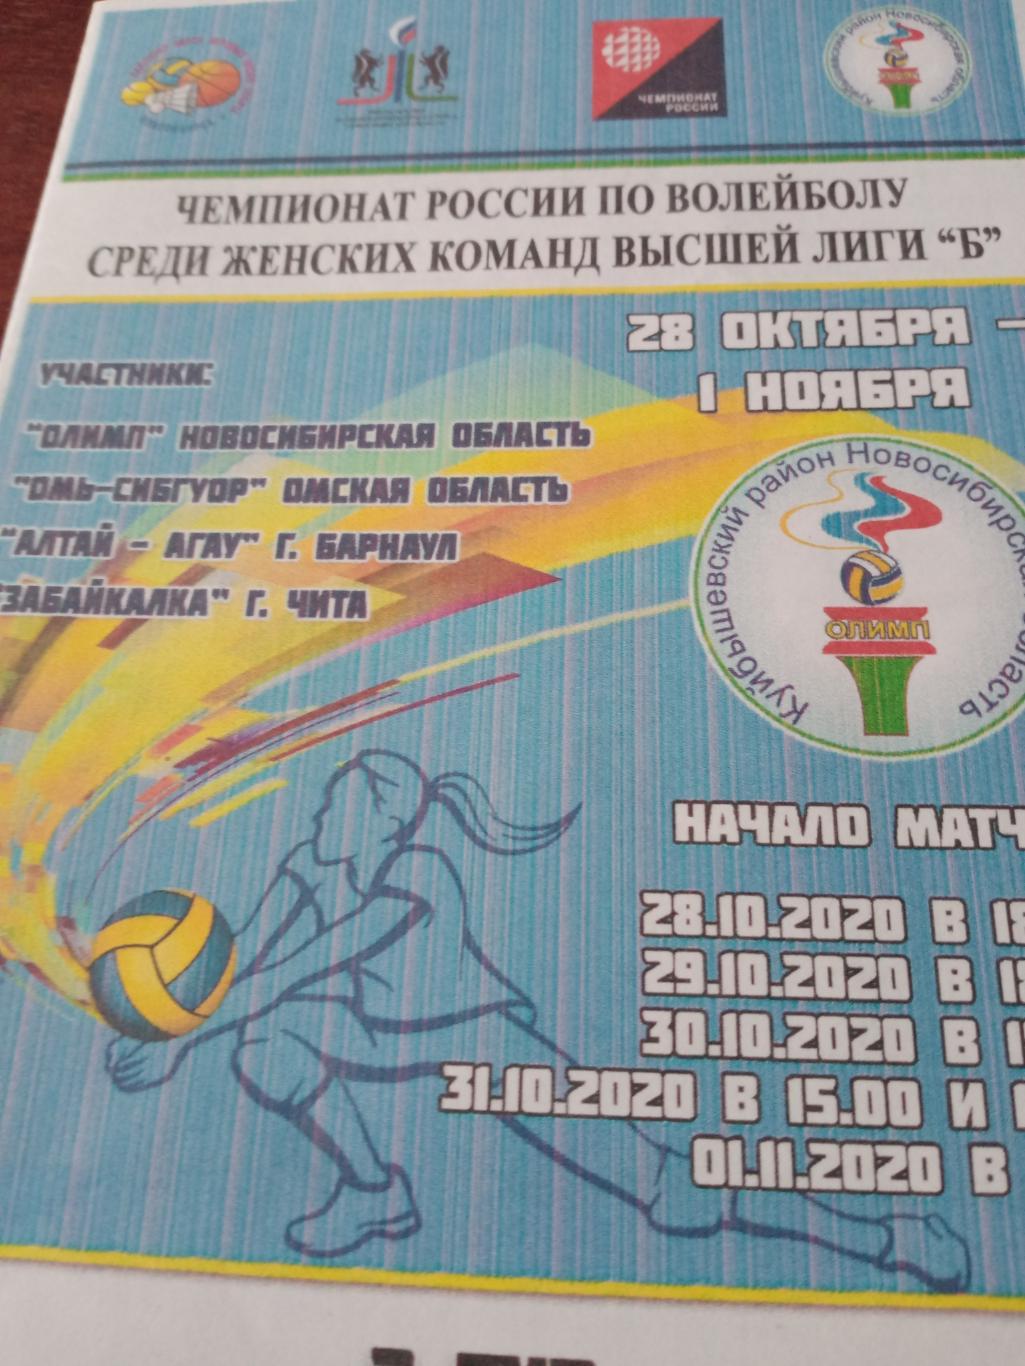 Высшая лига Б. Тур в Новосибирской области. 28.10 - 1.11. 2020 год.